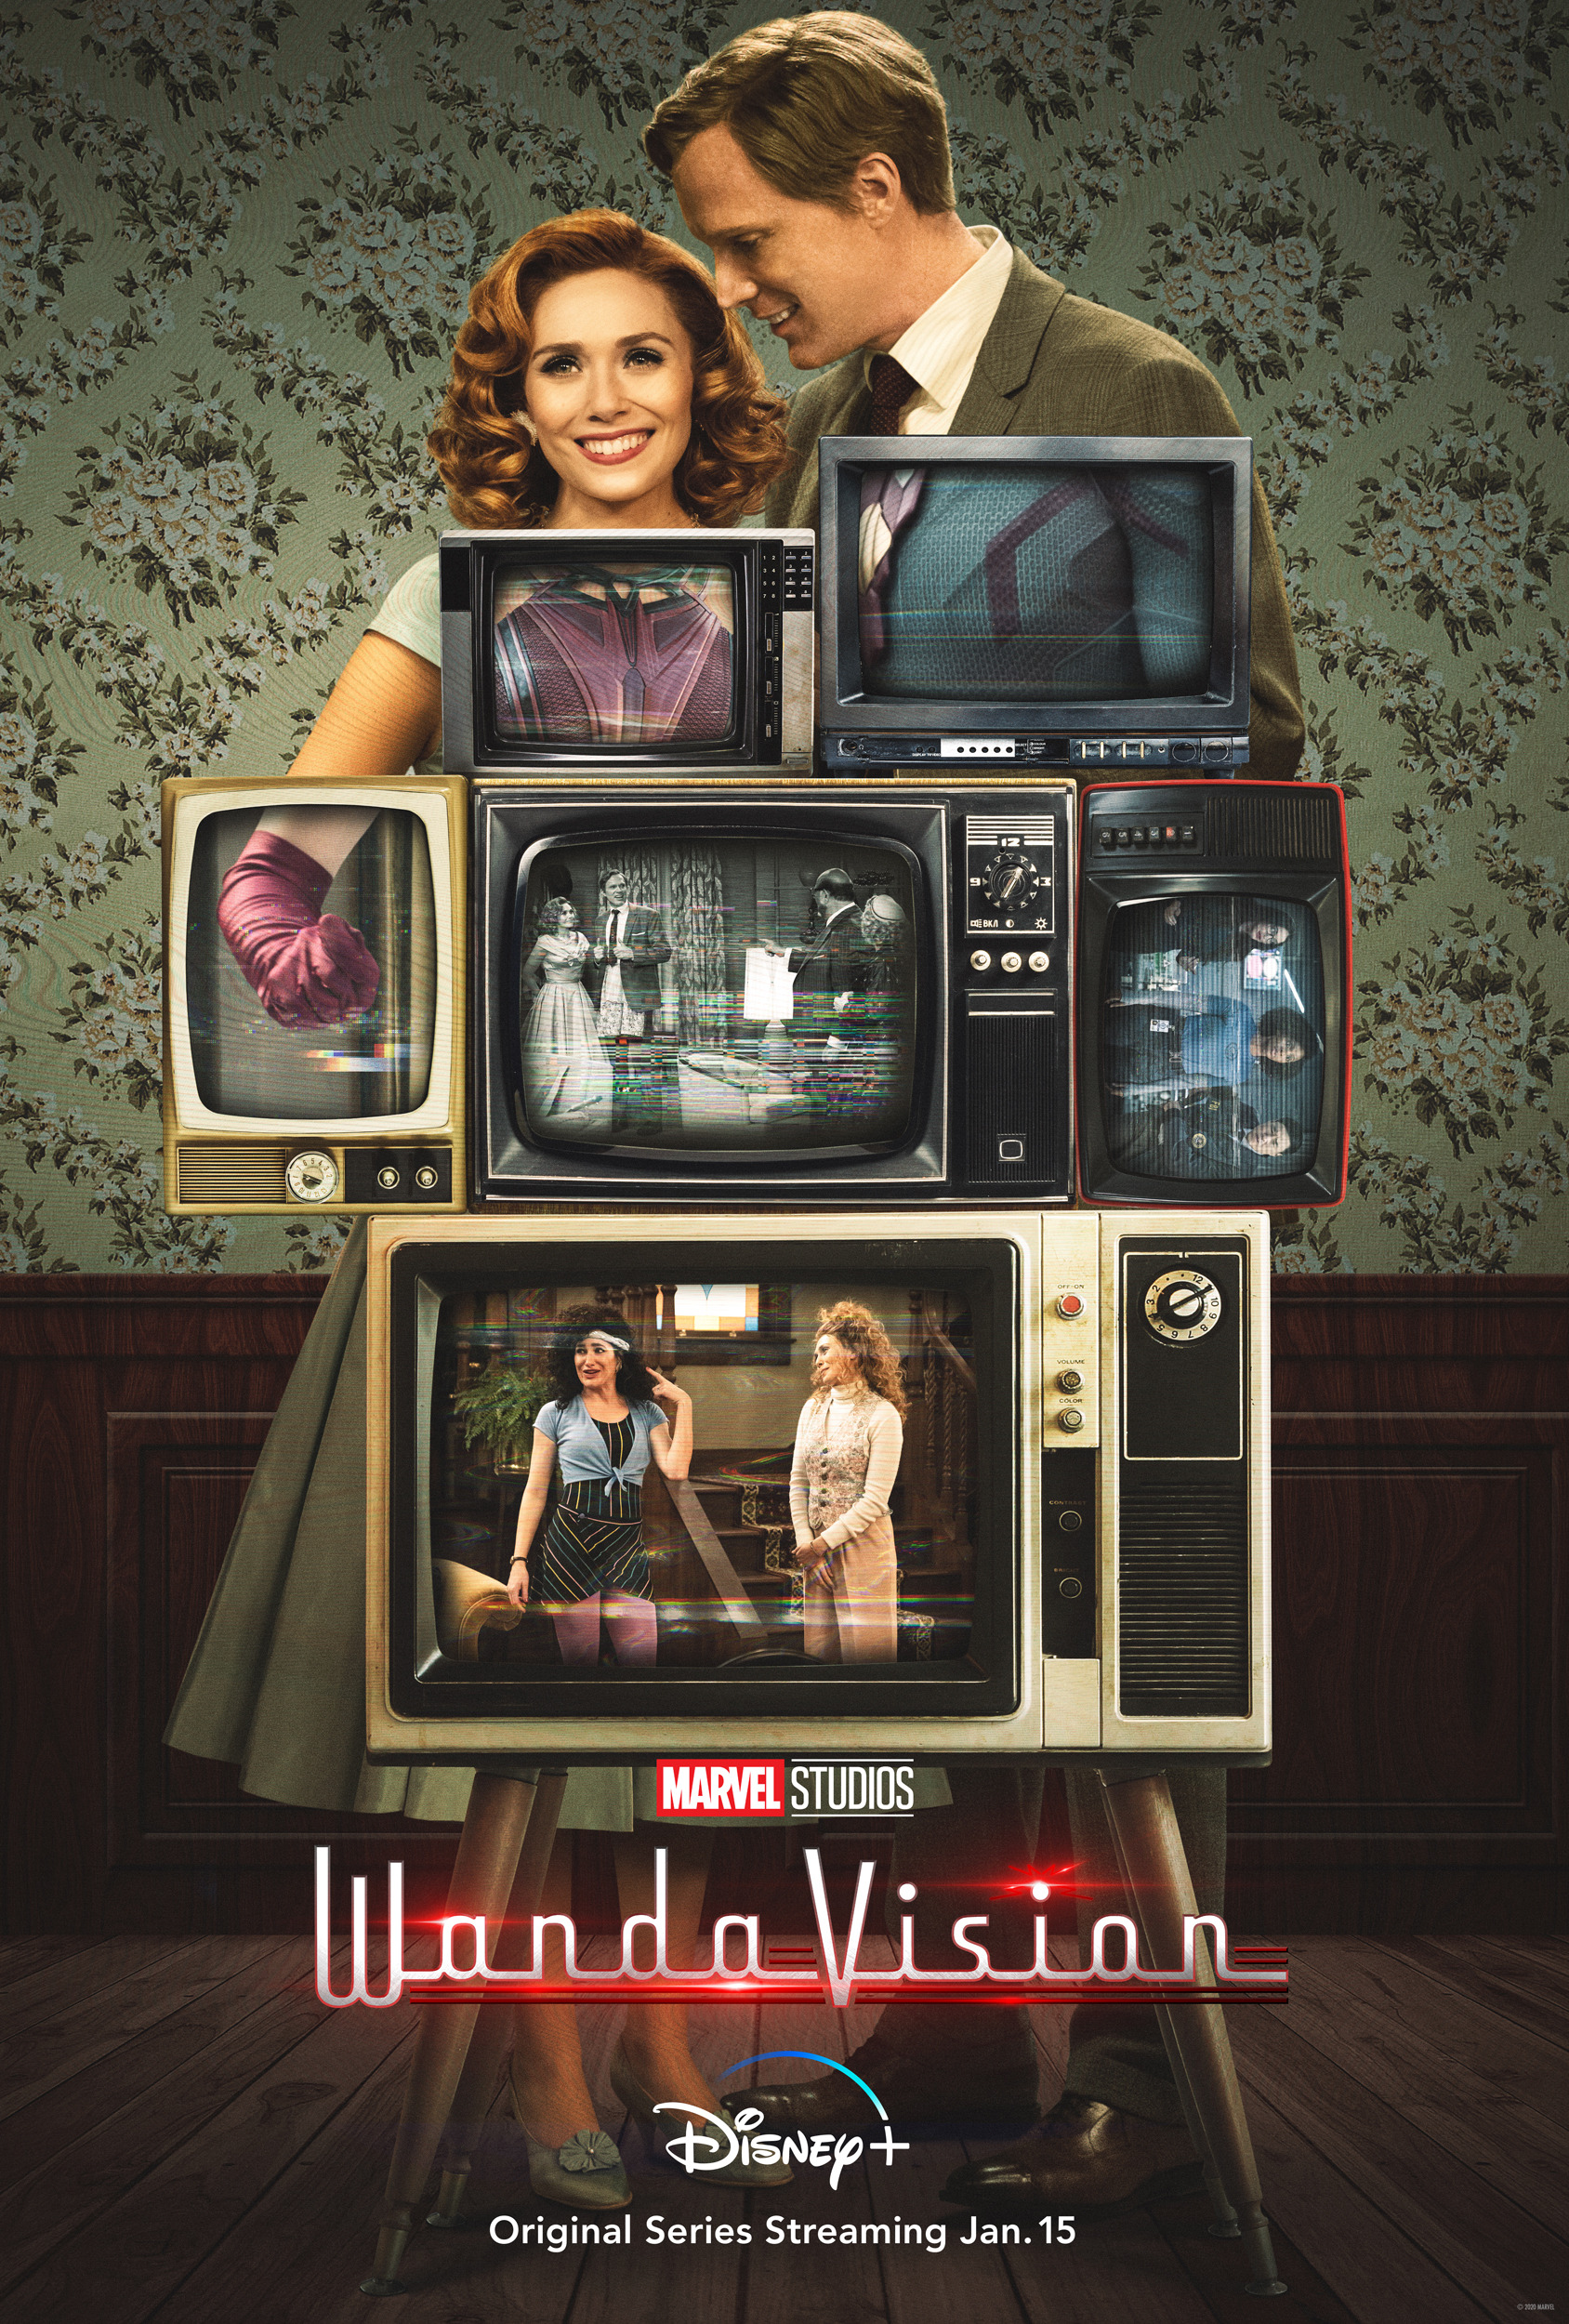 Mega Sized TV Poster Image for WandaVision (#8 of 26)